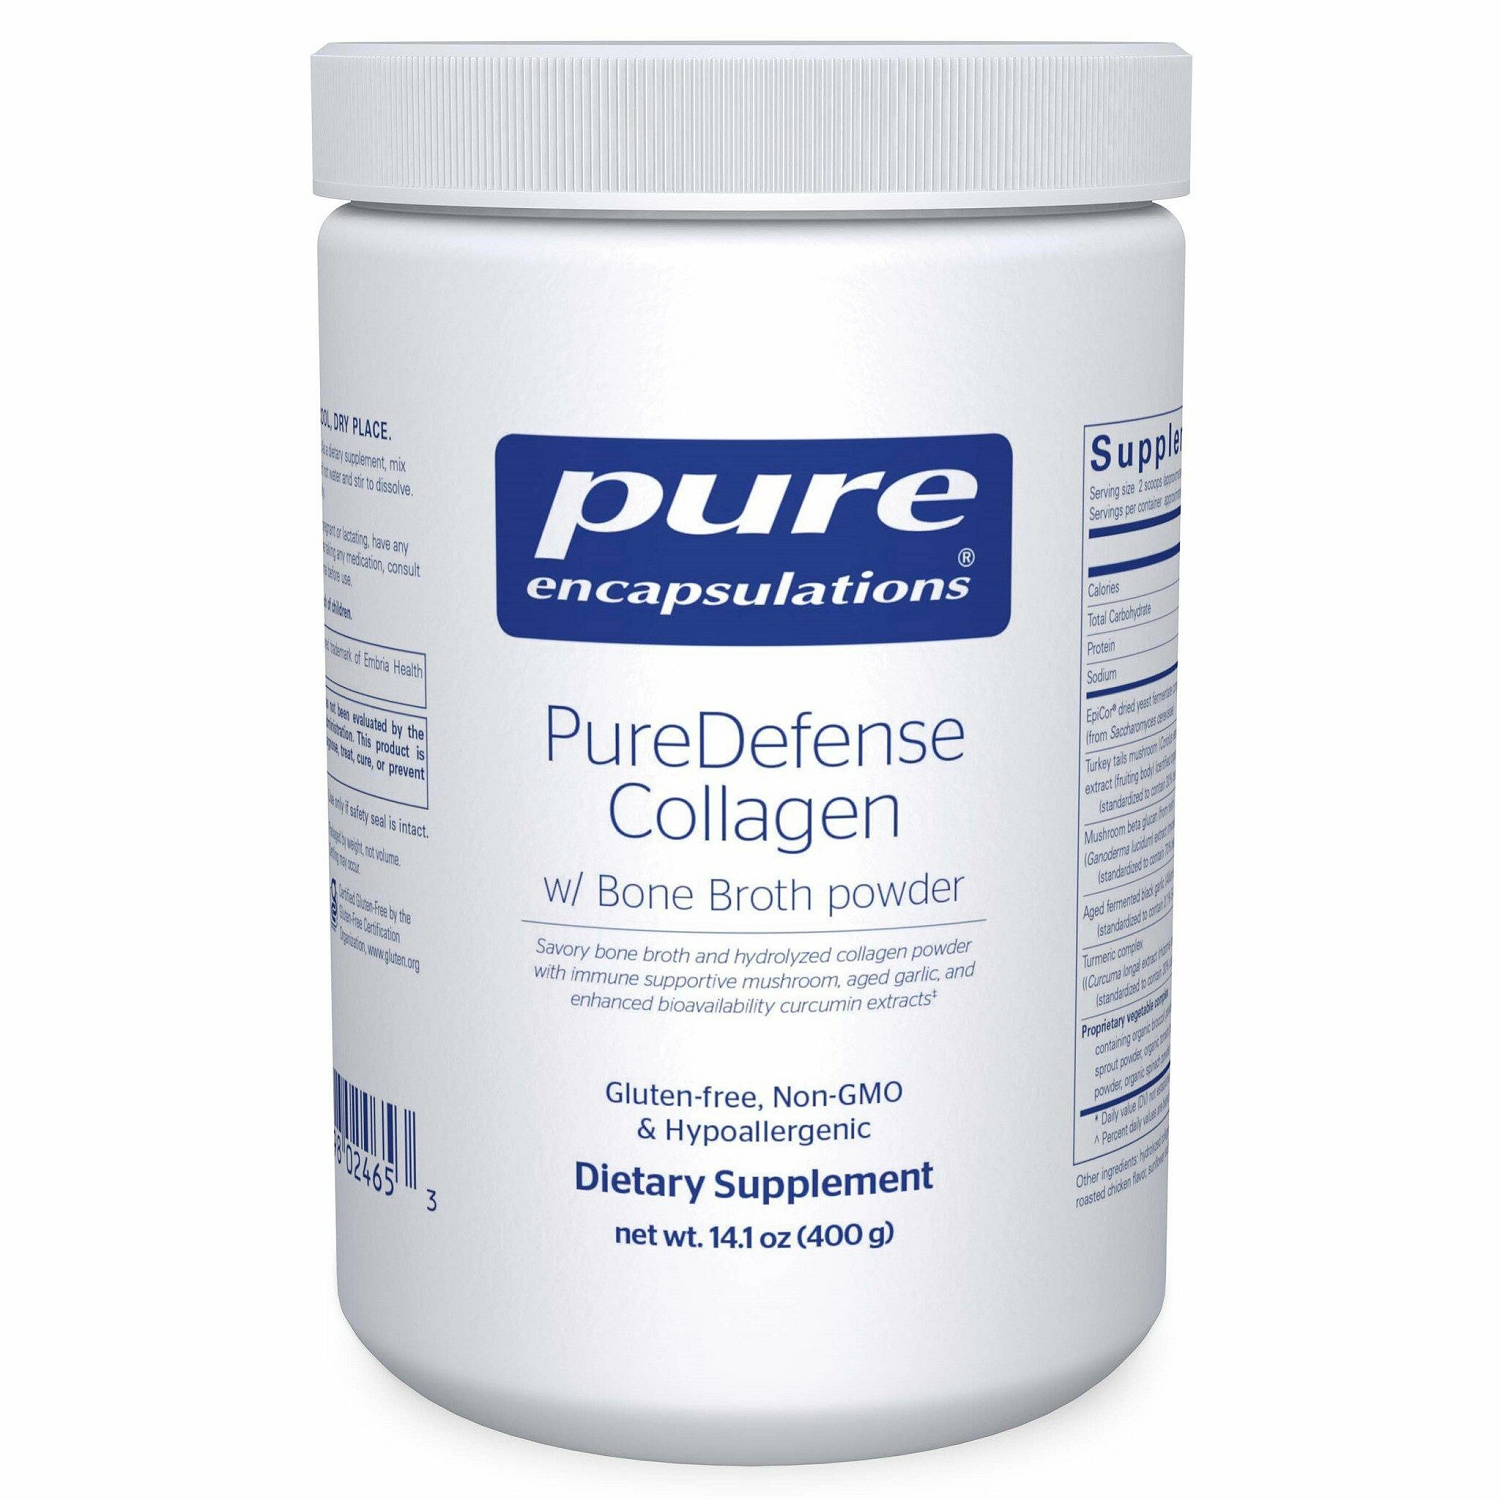 Puredefense Collagen with Bone Broth Powder, 400g 